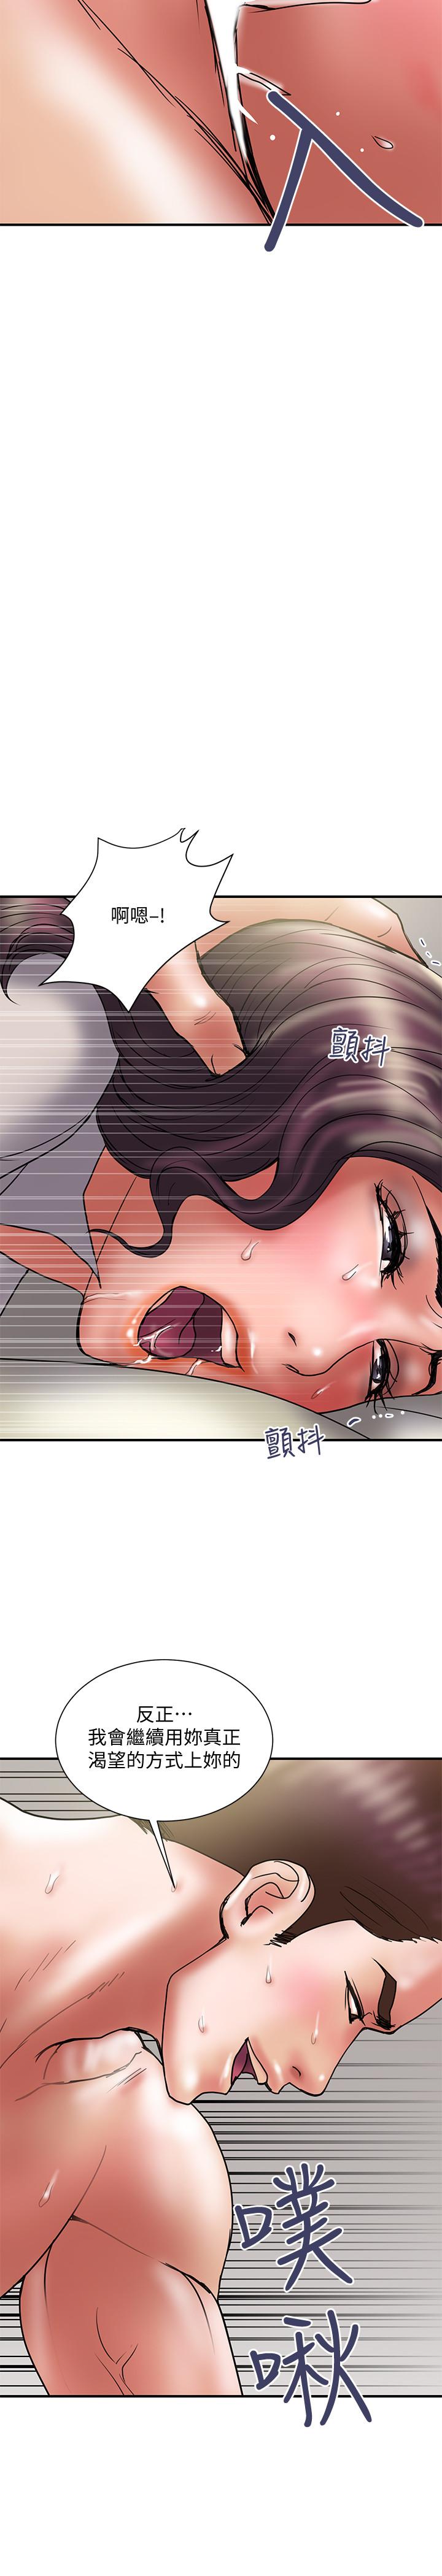 韩国污漫画 計劃出軌 第37话-屈辱与快感交错 20